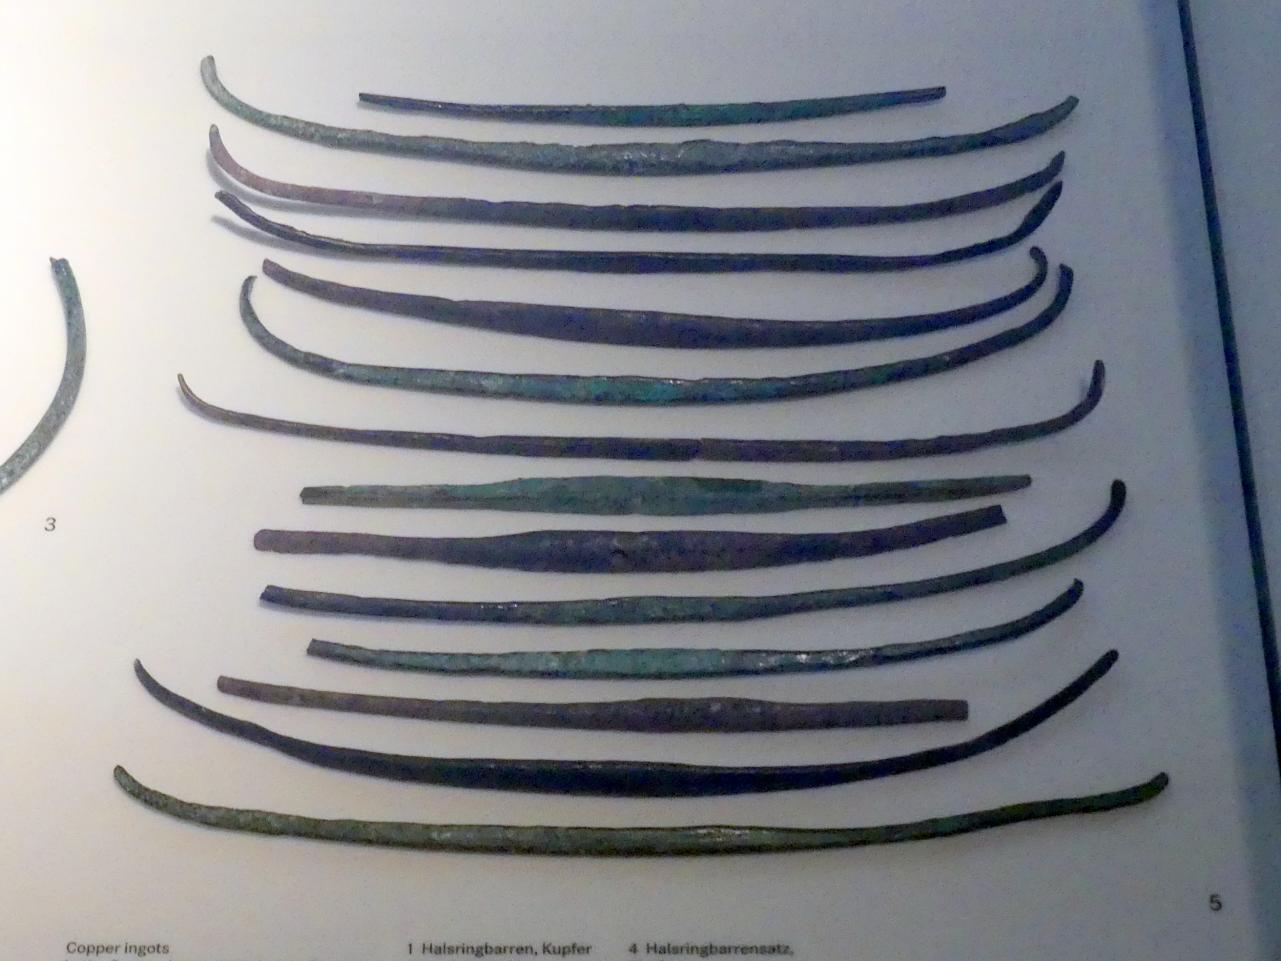 Spangenbarren, Frühe Bronzezeit, 3365 - 1200 v. Chr., 1800 - 1600 v. Chr., Bild 1/2